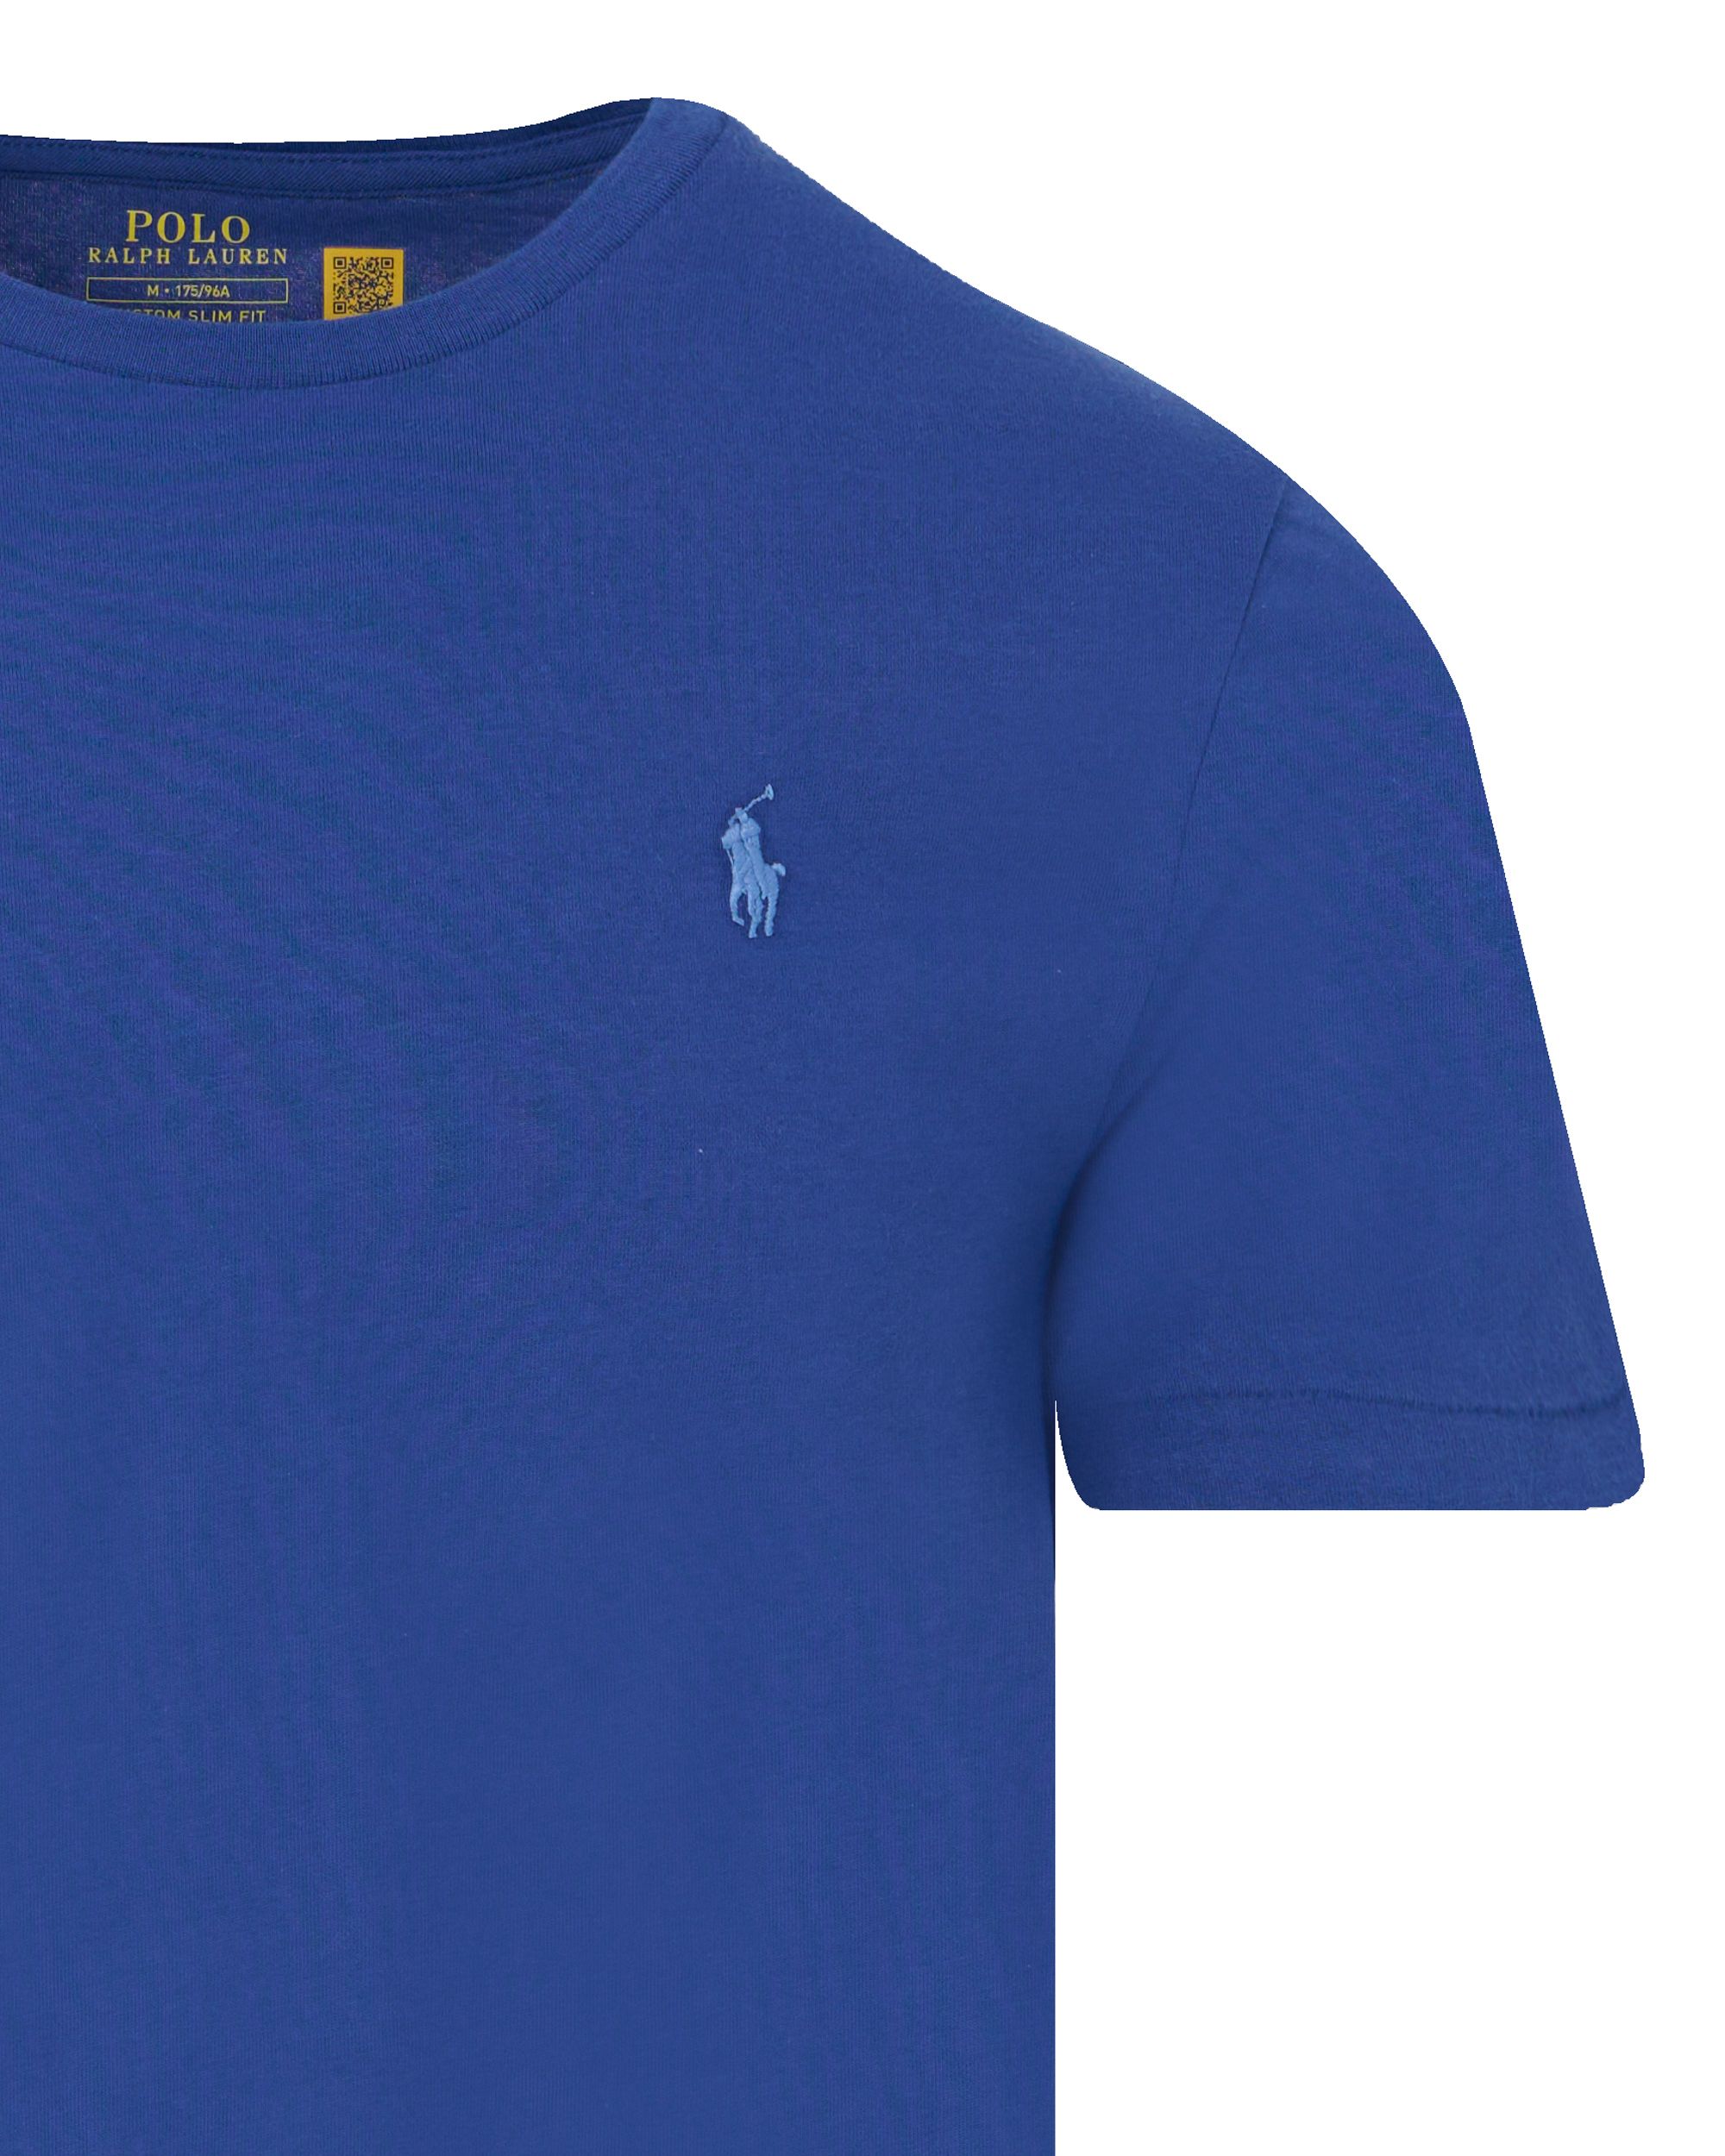 Polo Ralph Lauren T-shirt KM Blauw 095283-001-L